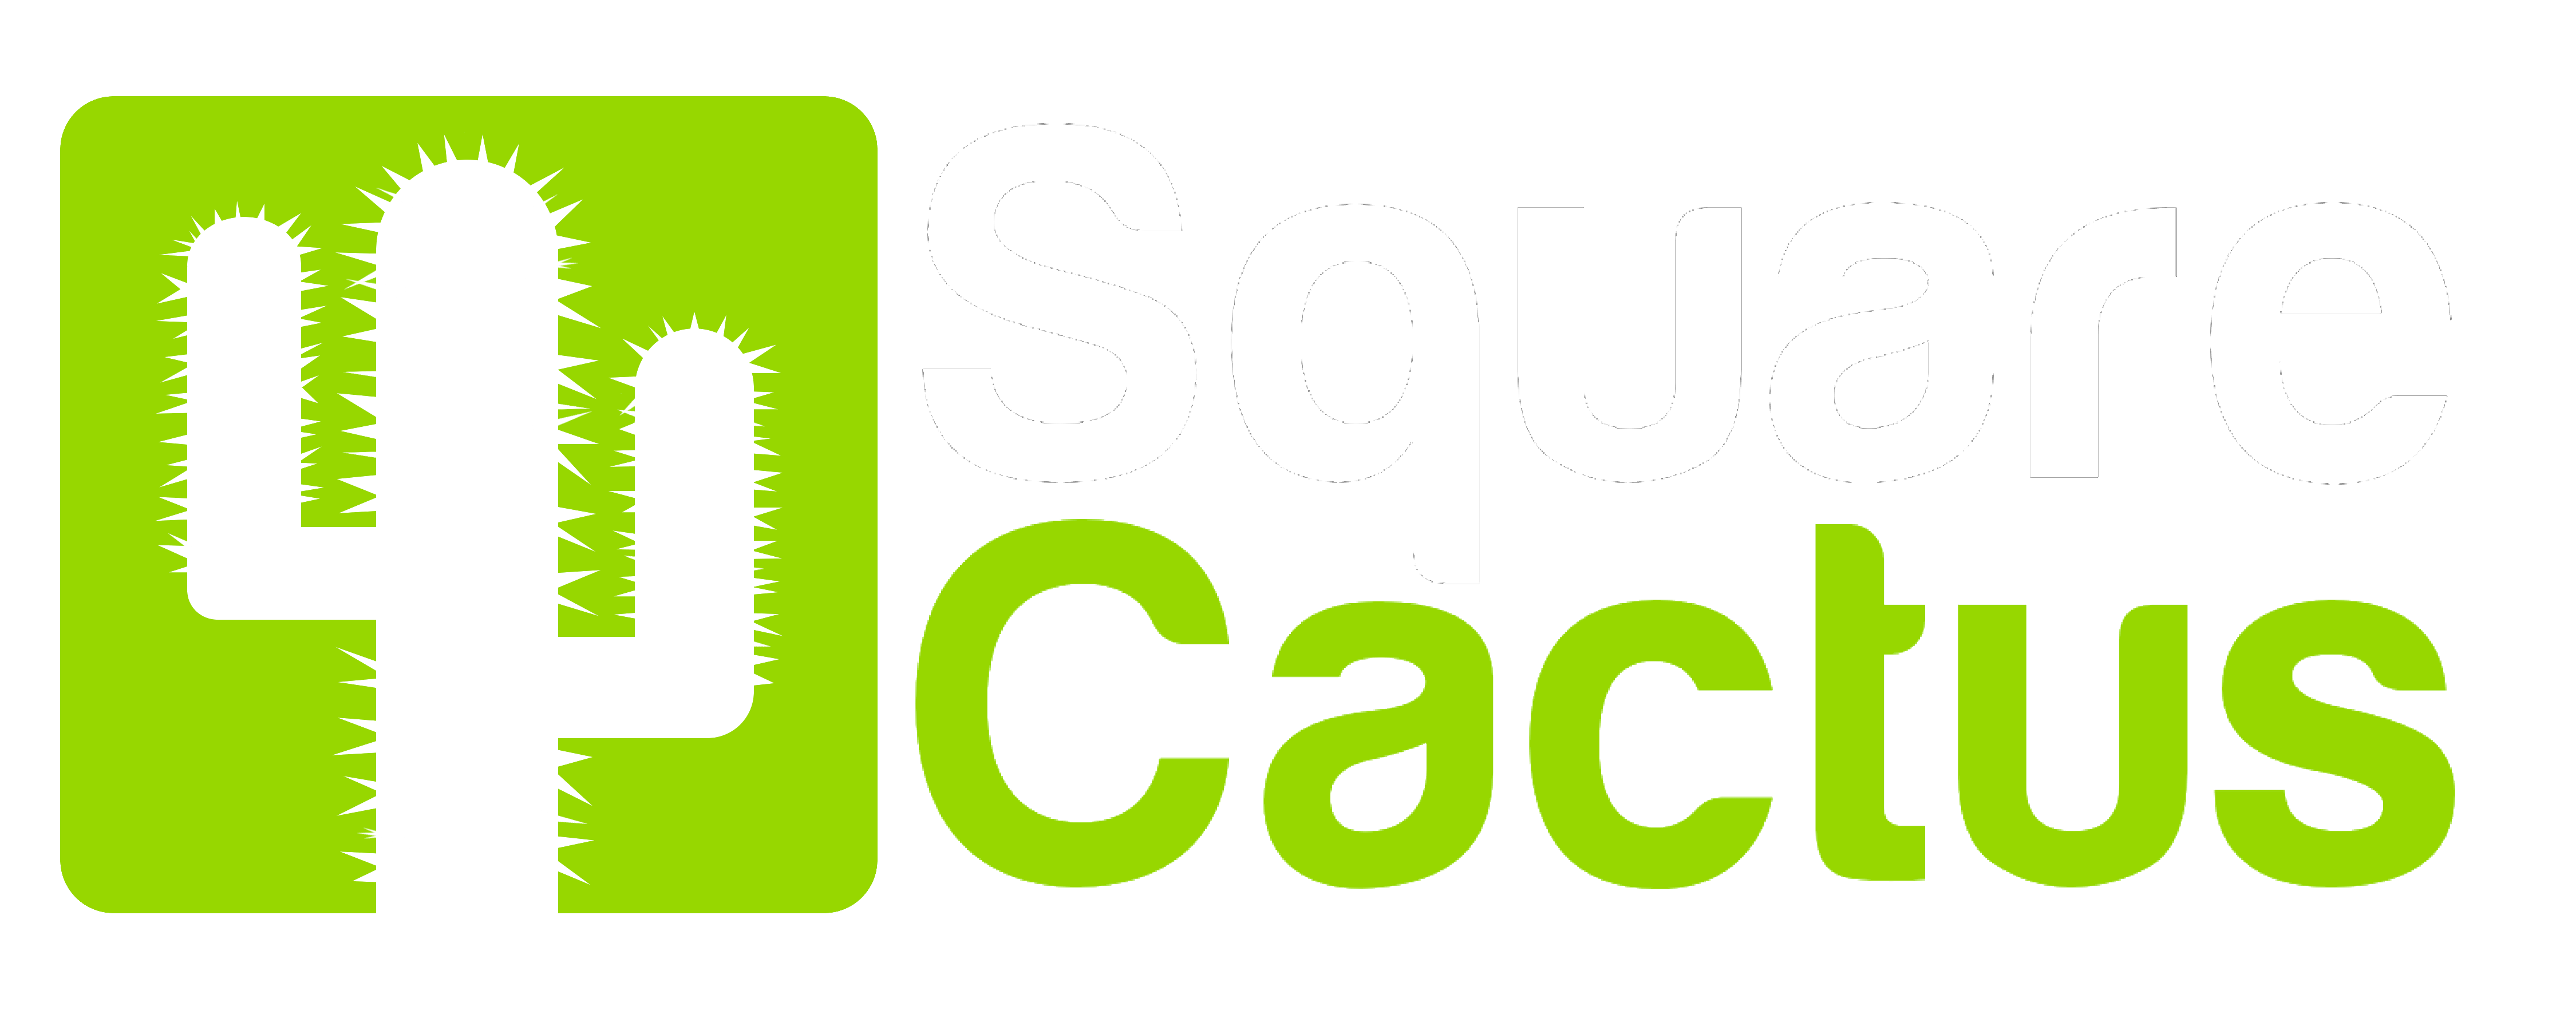 Social Media Green Logo - Square Cactus - Websites, Social Media, Training & PR